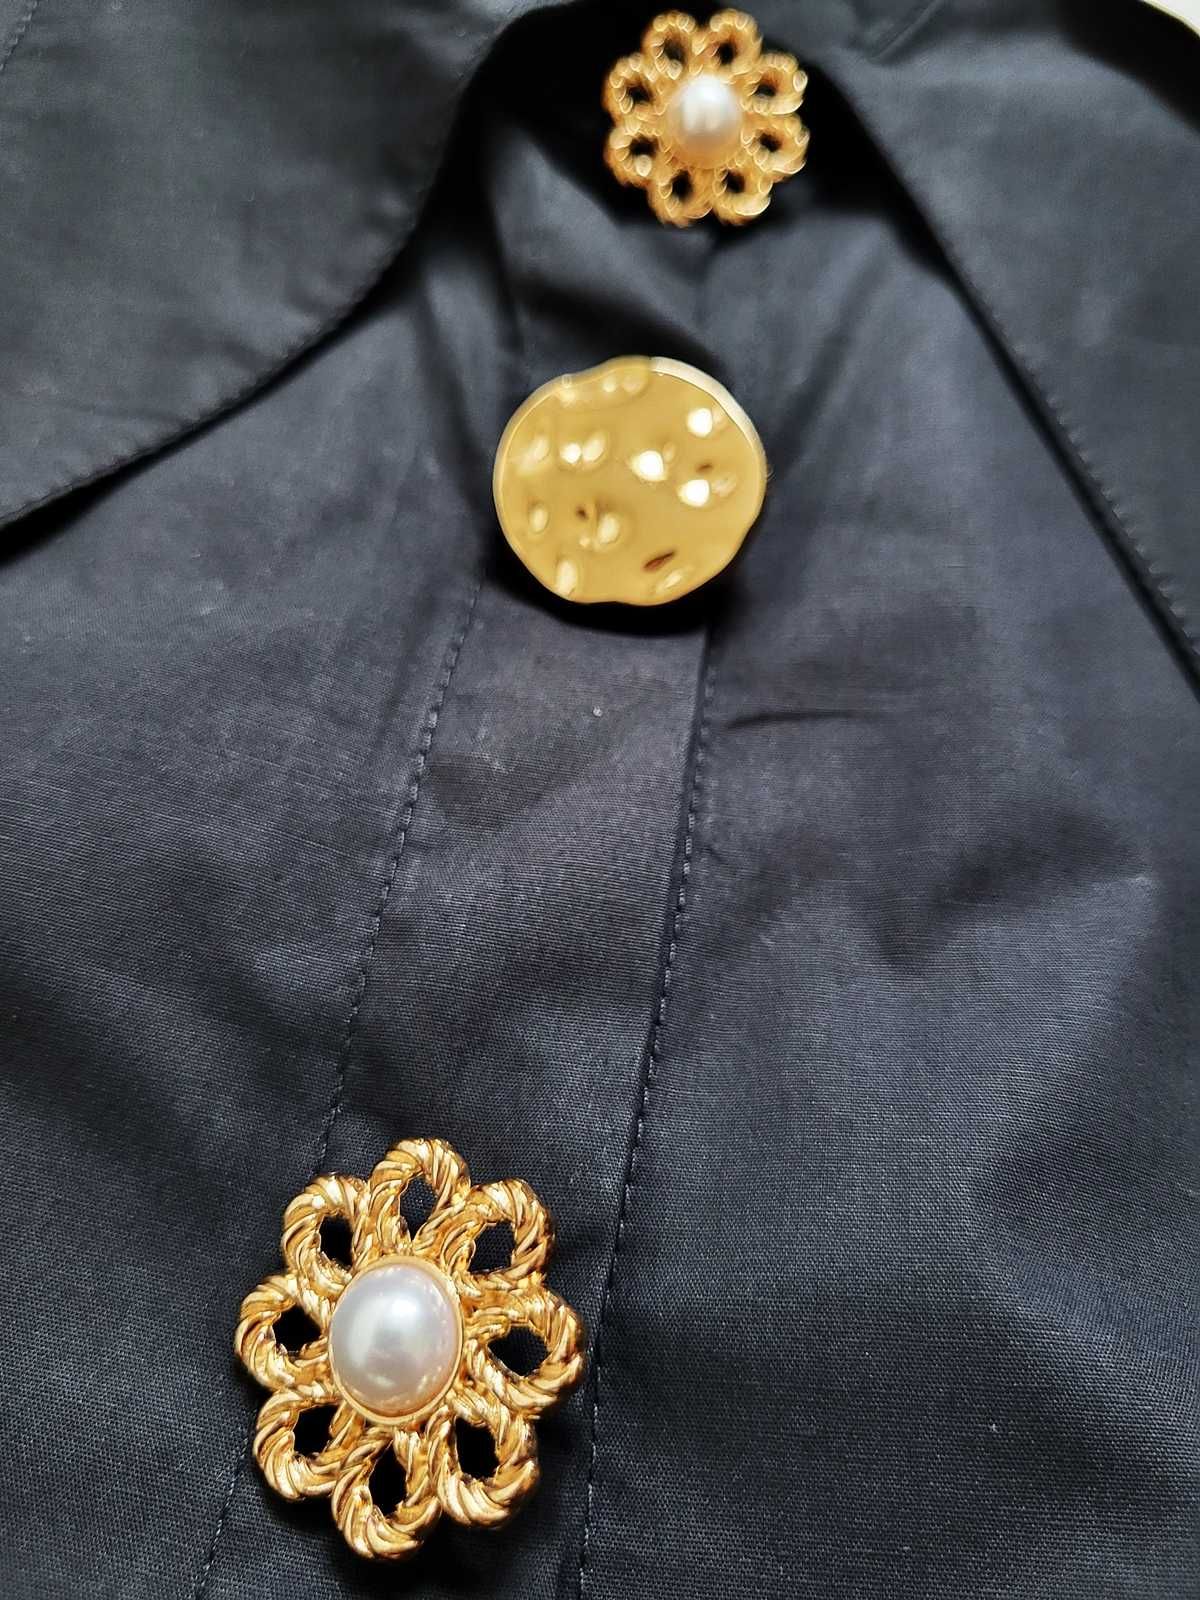 Czarna koszula z kołnierzem złote biżuteryjne guziki elegancka butik